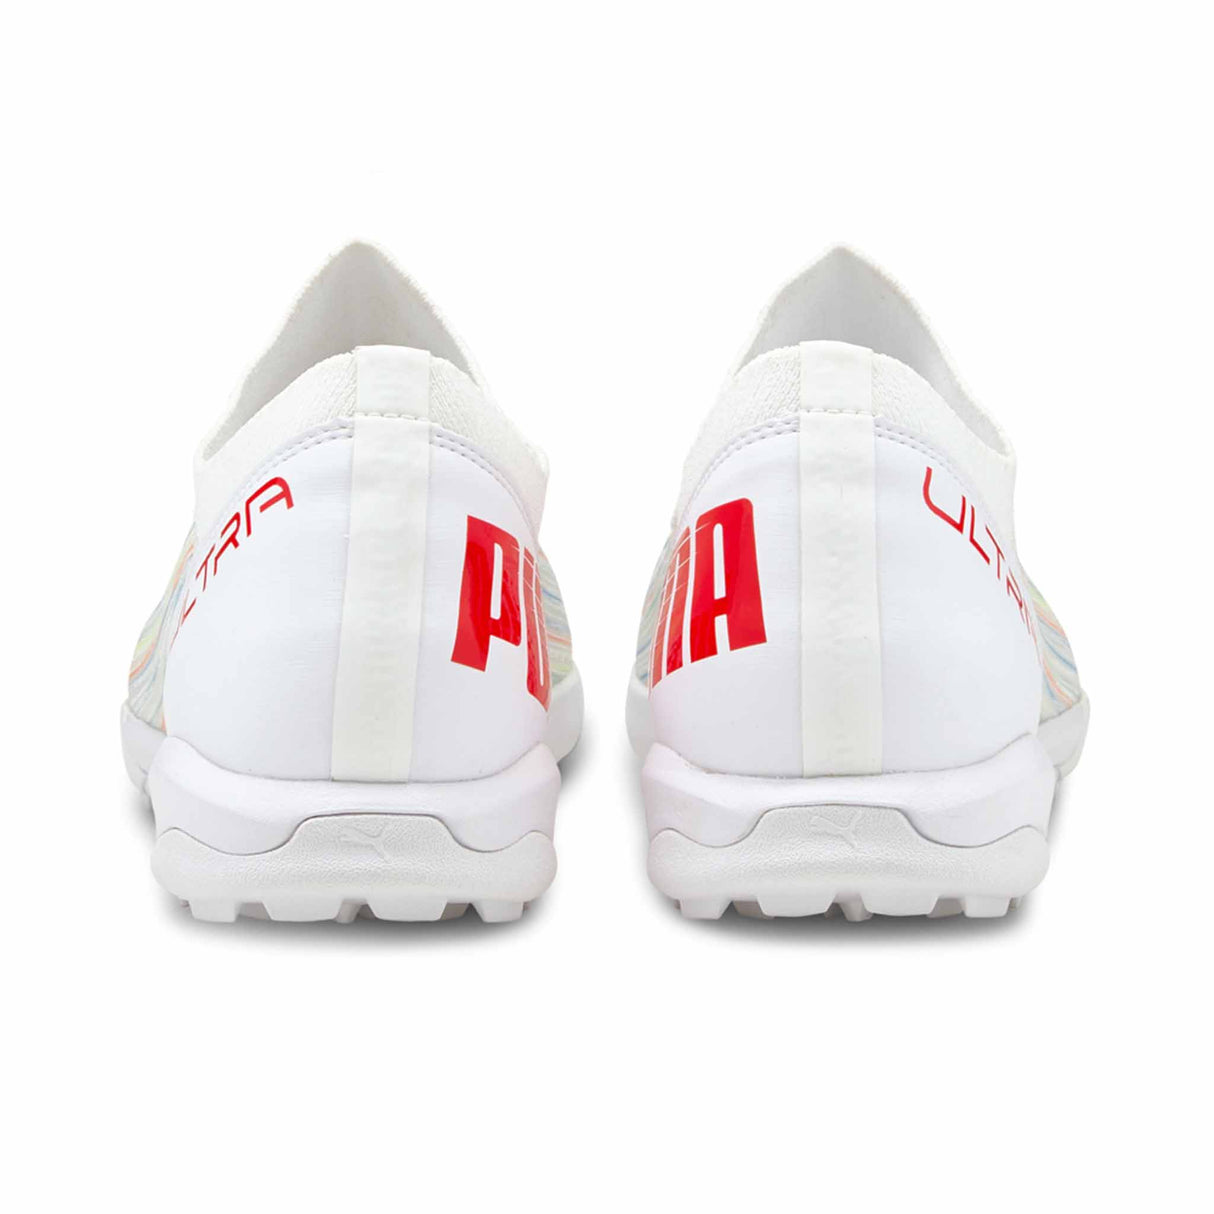 Puma Ultra 3.2 TT chaussures de soccer turf - Puma White / Red Blast - talons